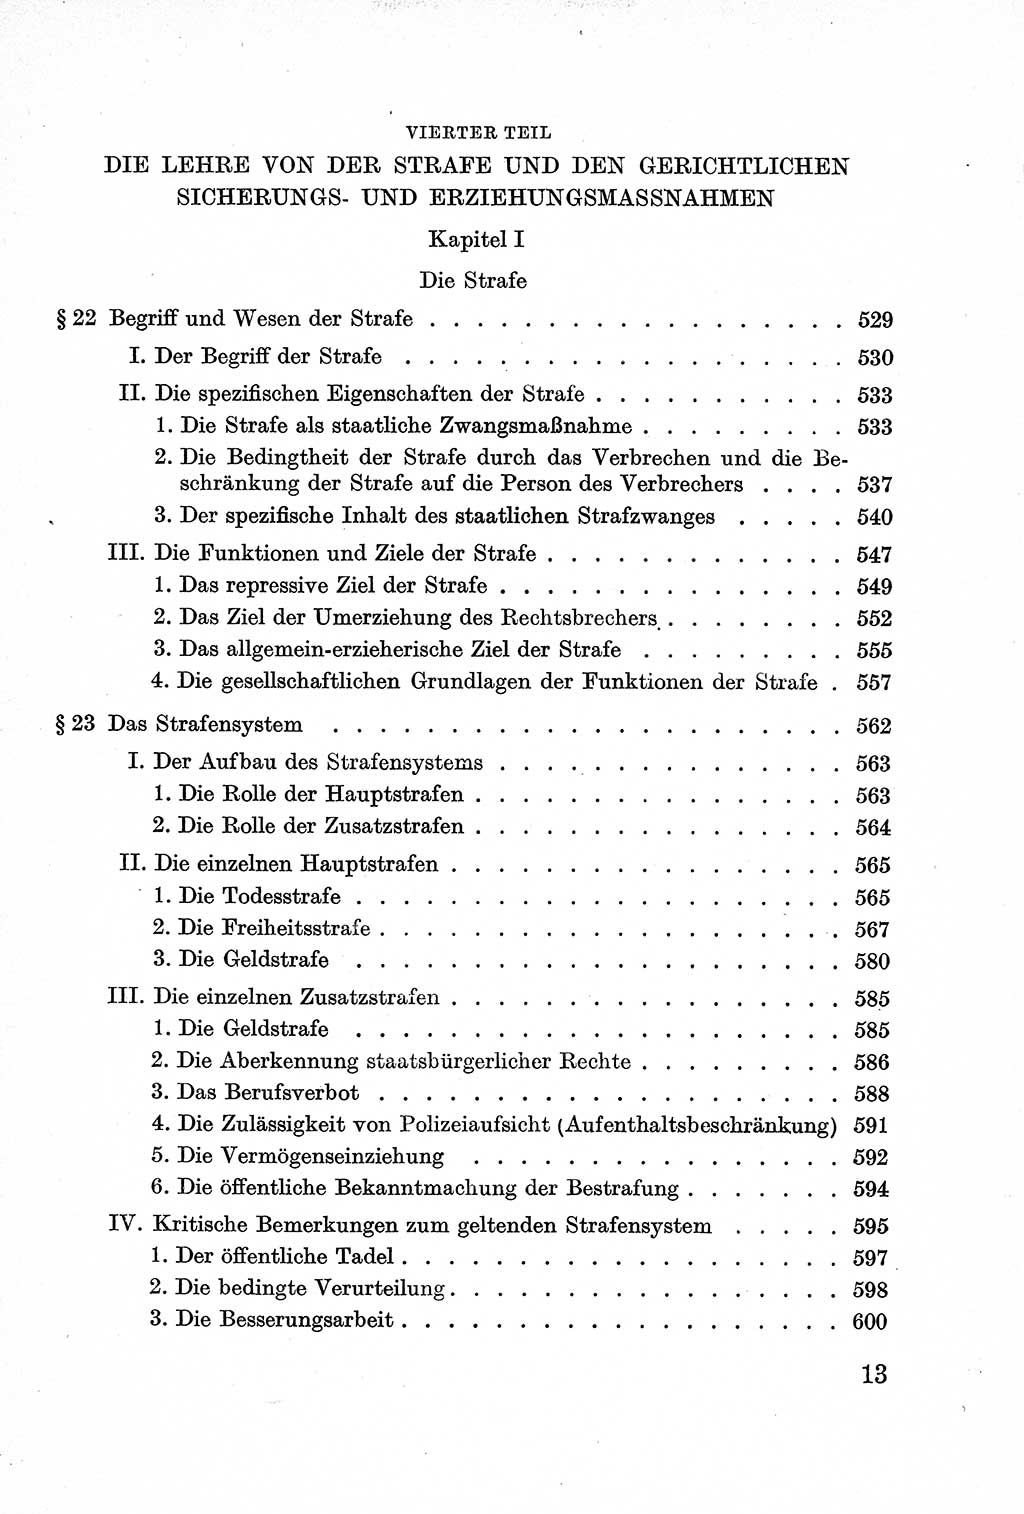 Lehrbuch des Strafrechts der Deutschen Demokratischen Republik (DDR), Allgemeiner Teil 1957, Seite 13 (Lb. Strafr. DDR AT 1957, S. 13)